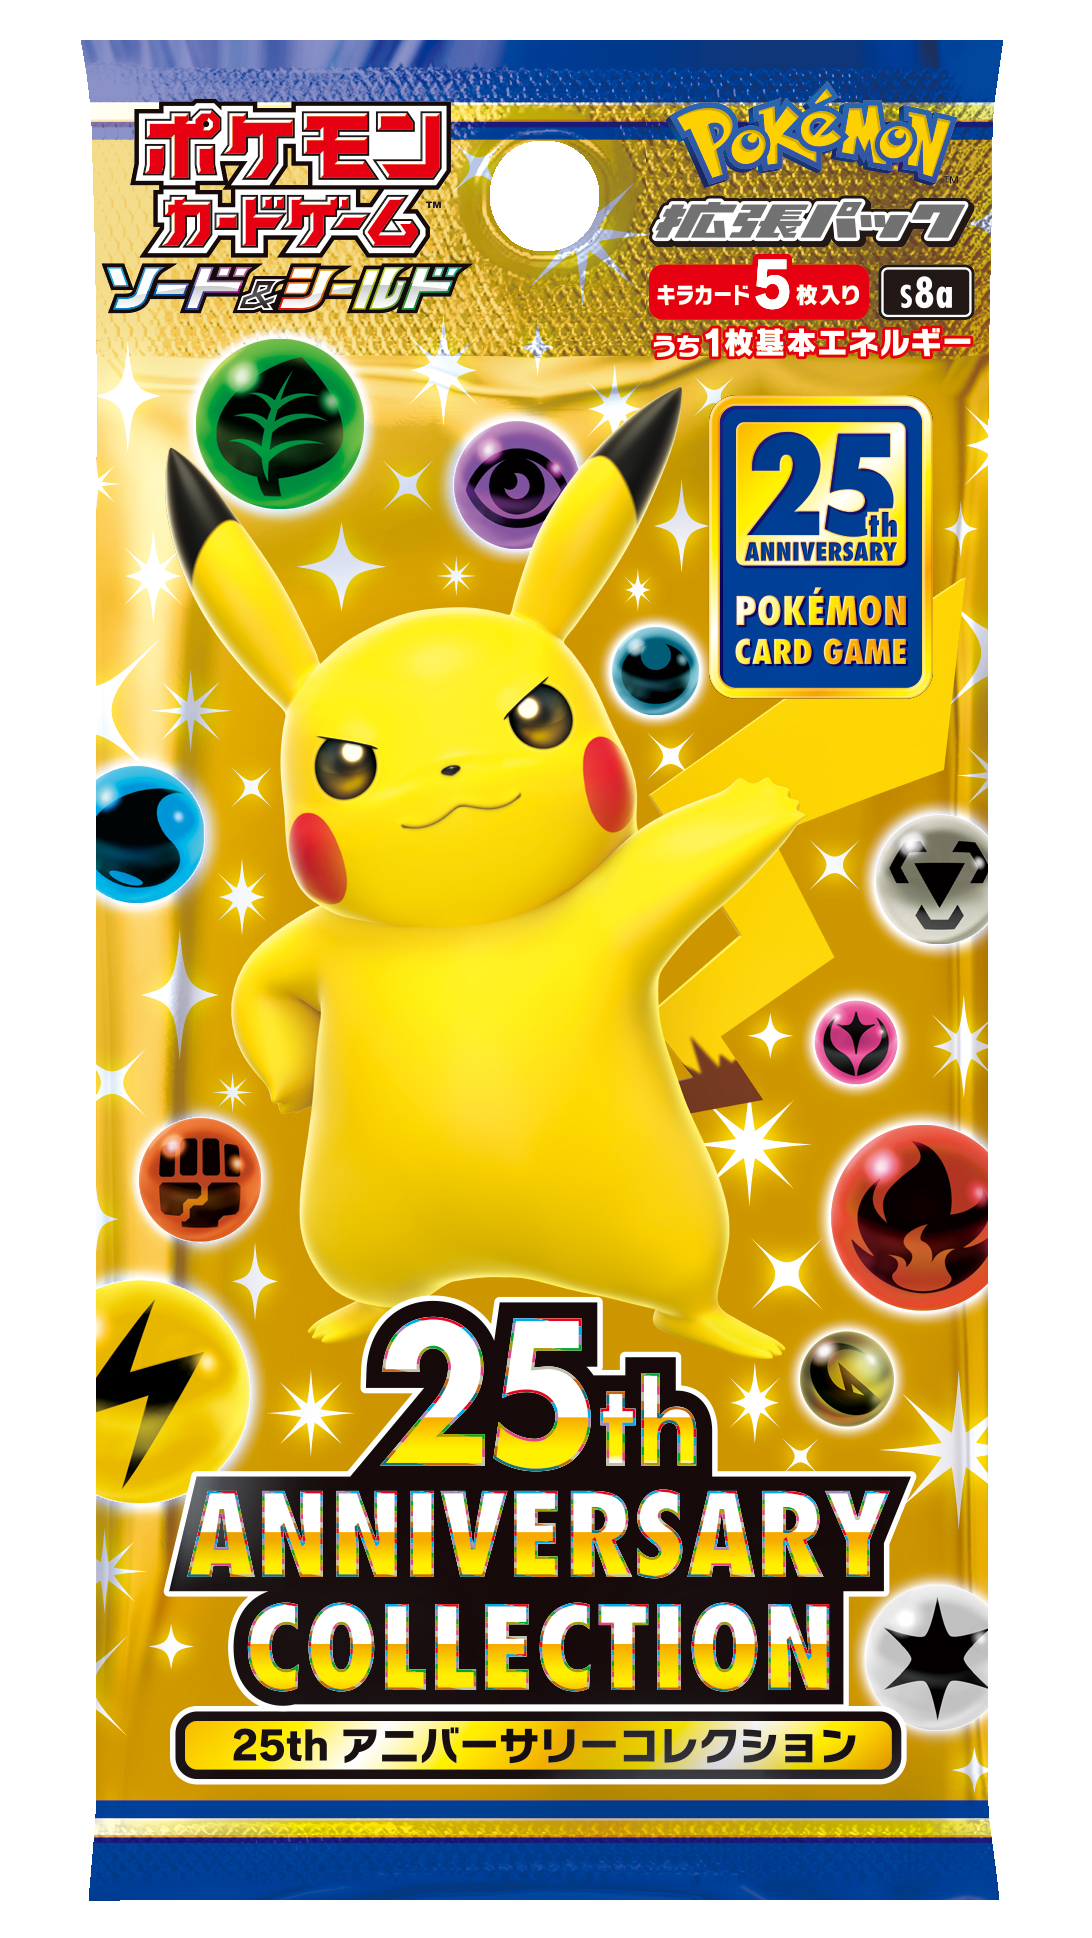 ポケモンカードゲーム 25周年記念パック 25th Anniversary Collection が10月22日に発売決定 コロコロオンライン コロコロコミック公式